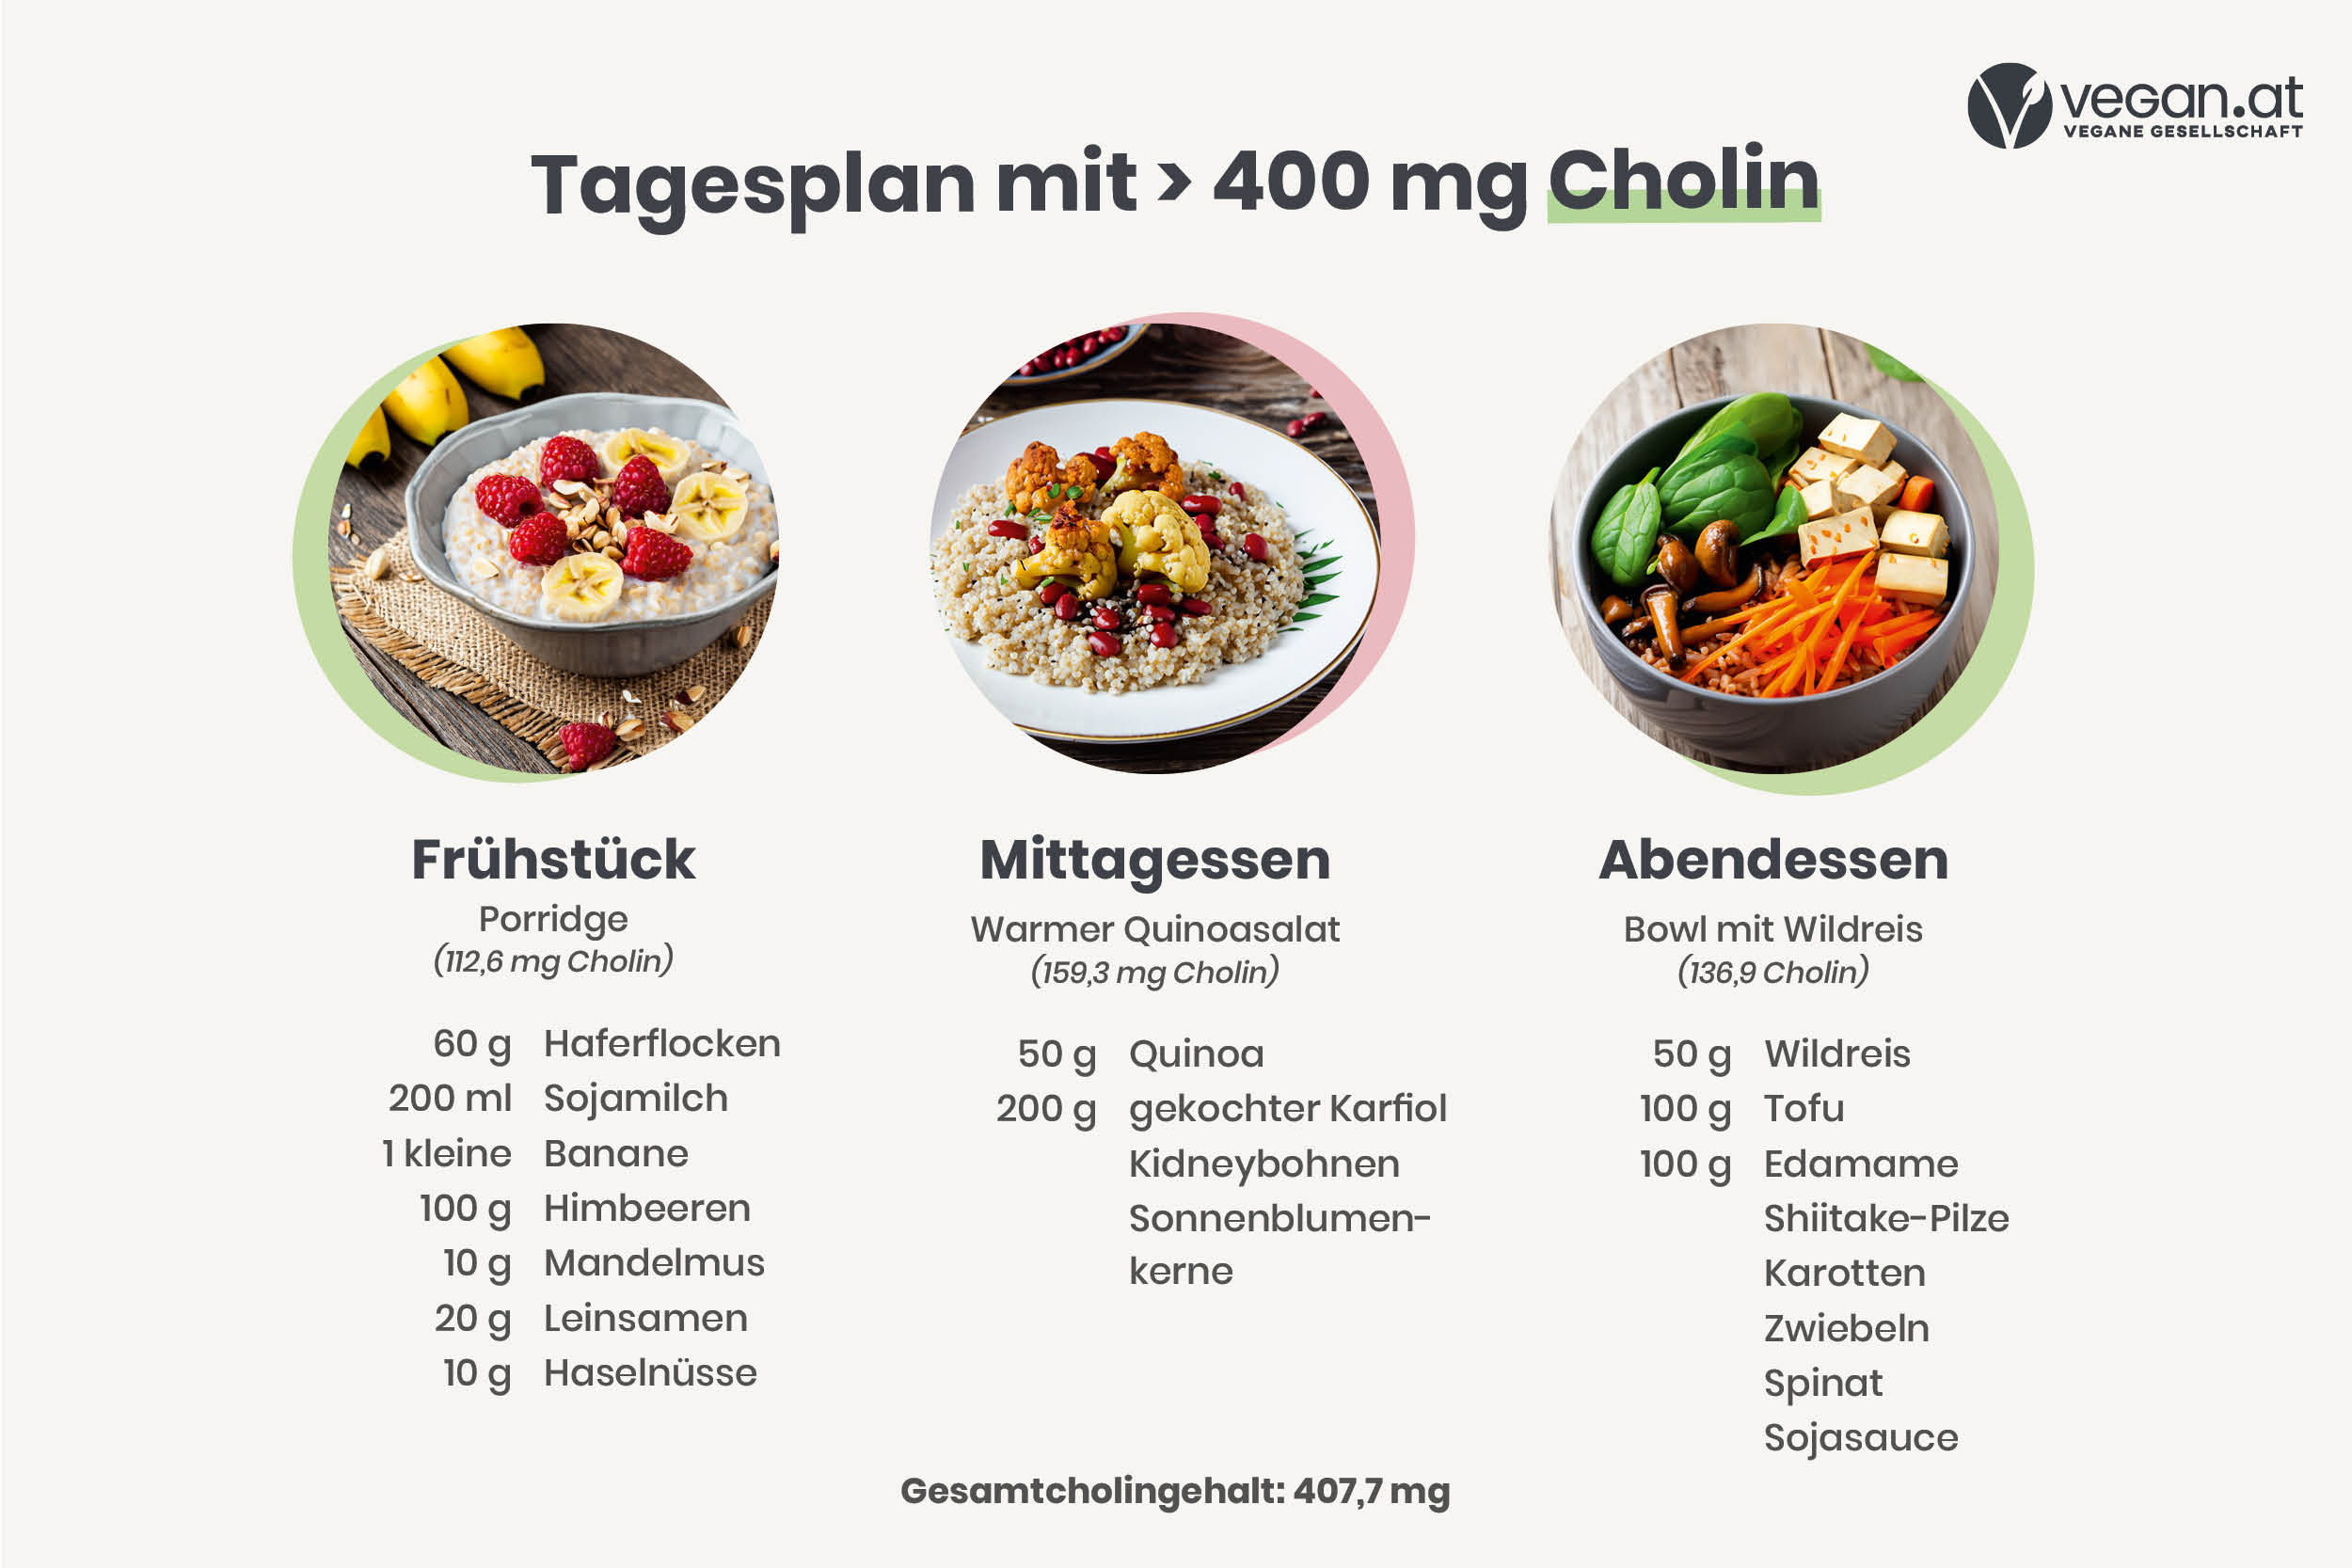 Tagesplan mit > 400 mg Cholin